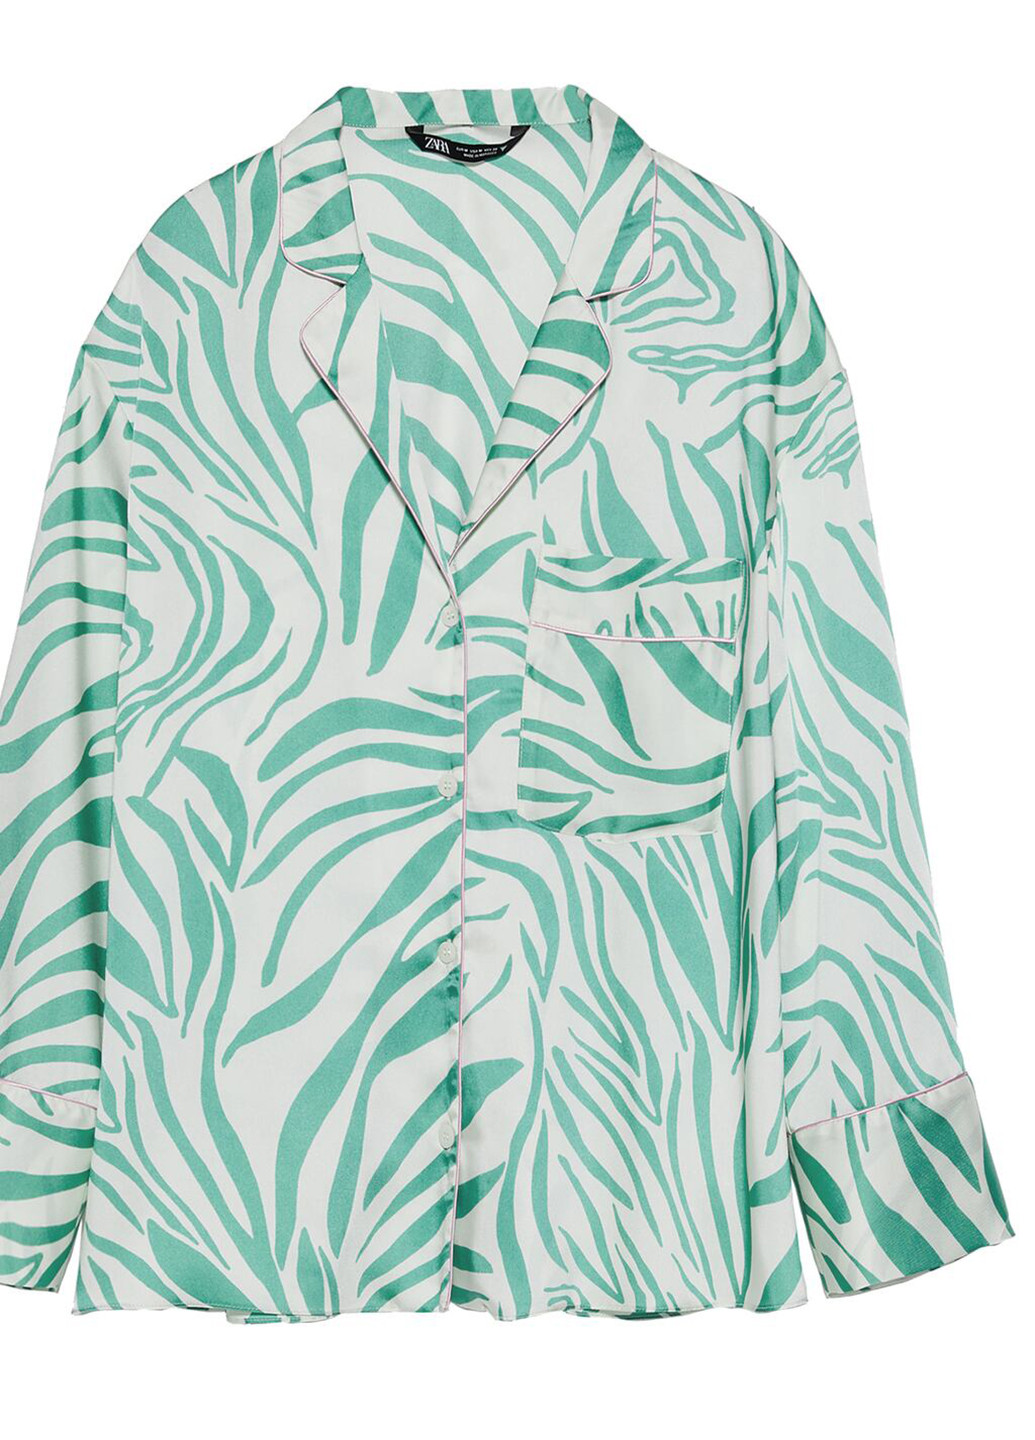 Цветной женский жакет Zara с абстрактным узором - демисезонный